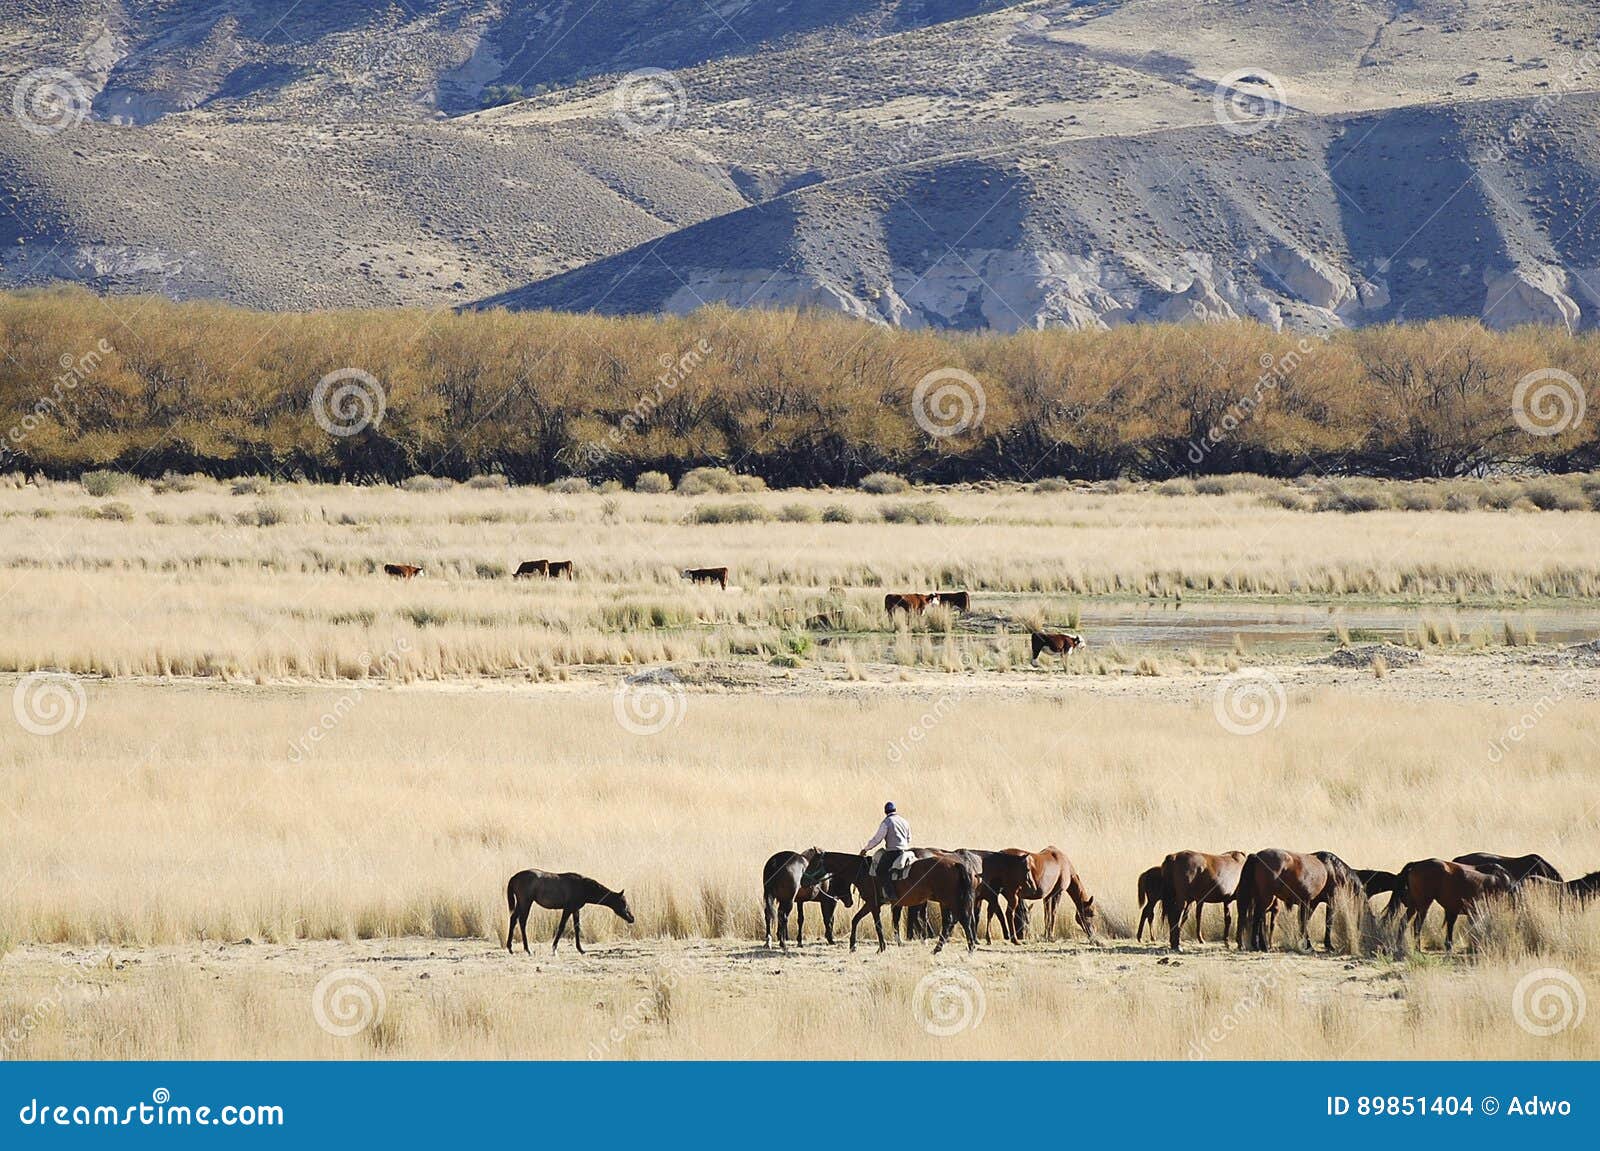 gaucho in patagonia - argentina